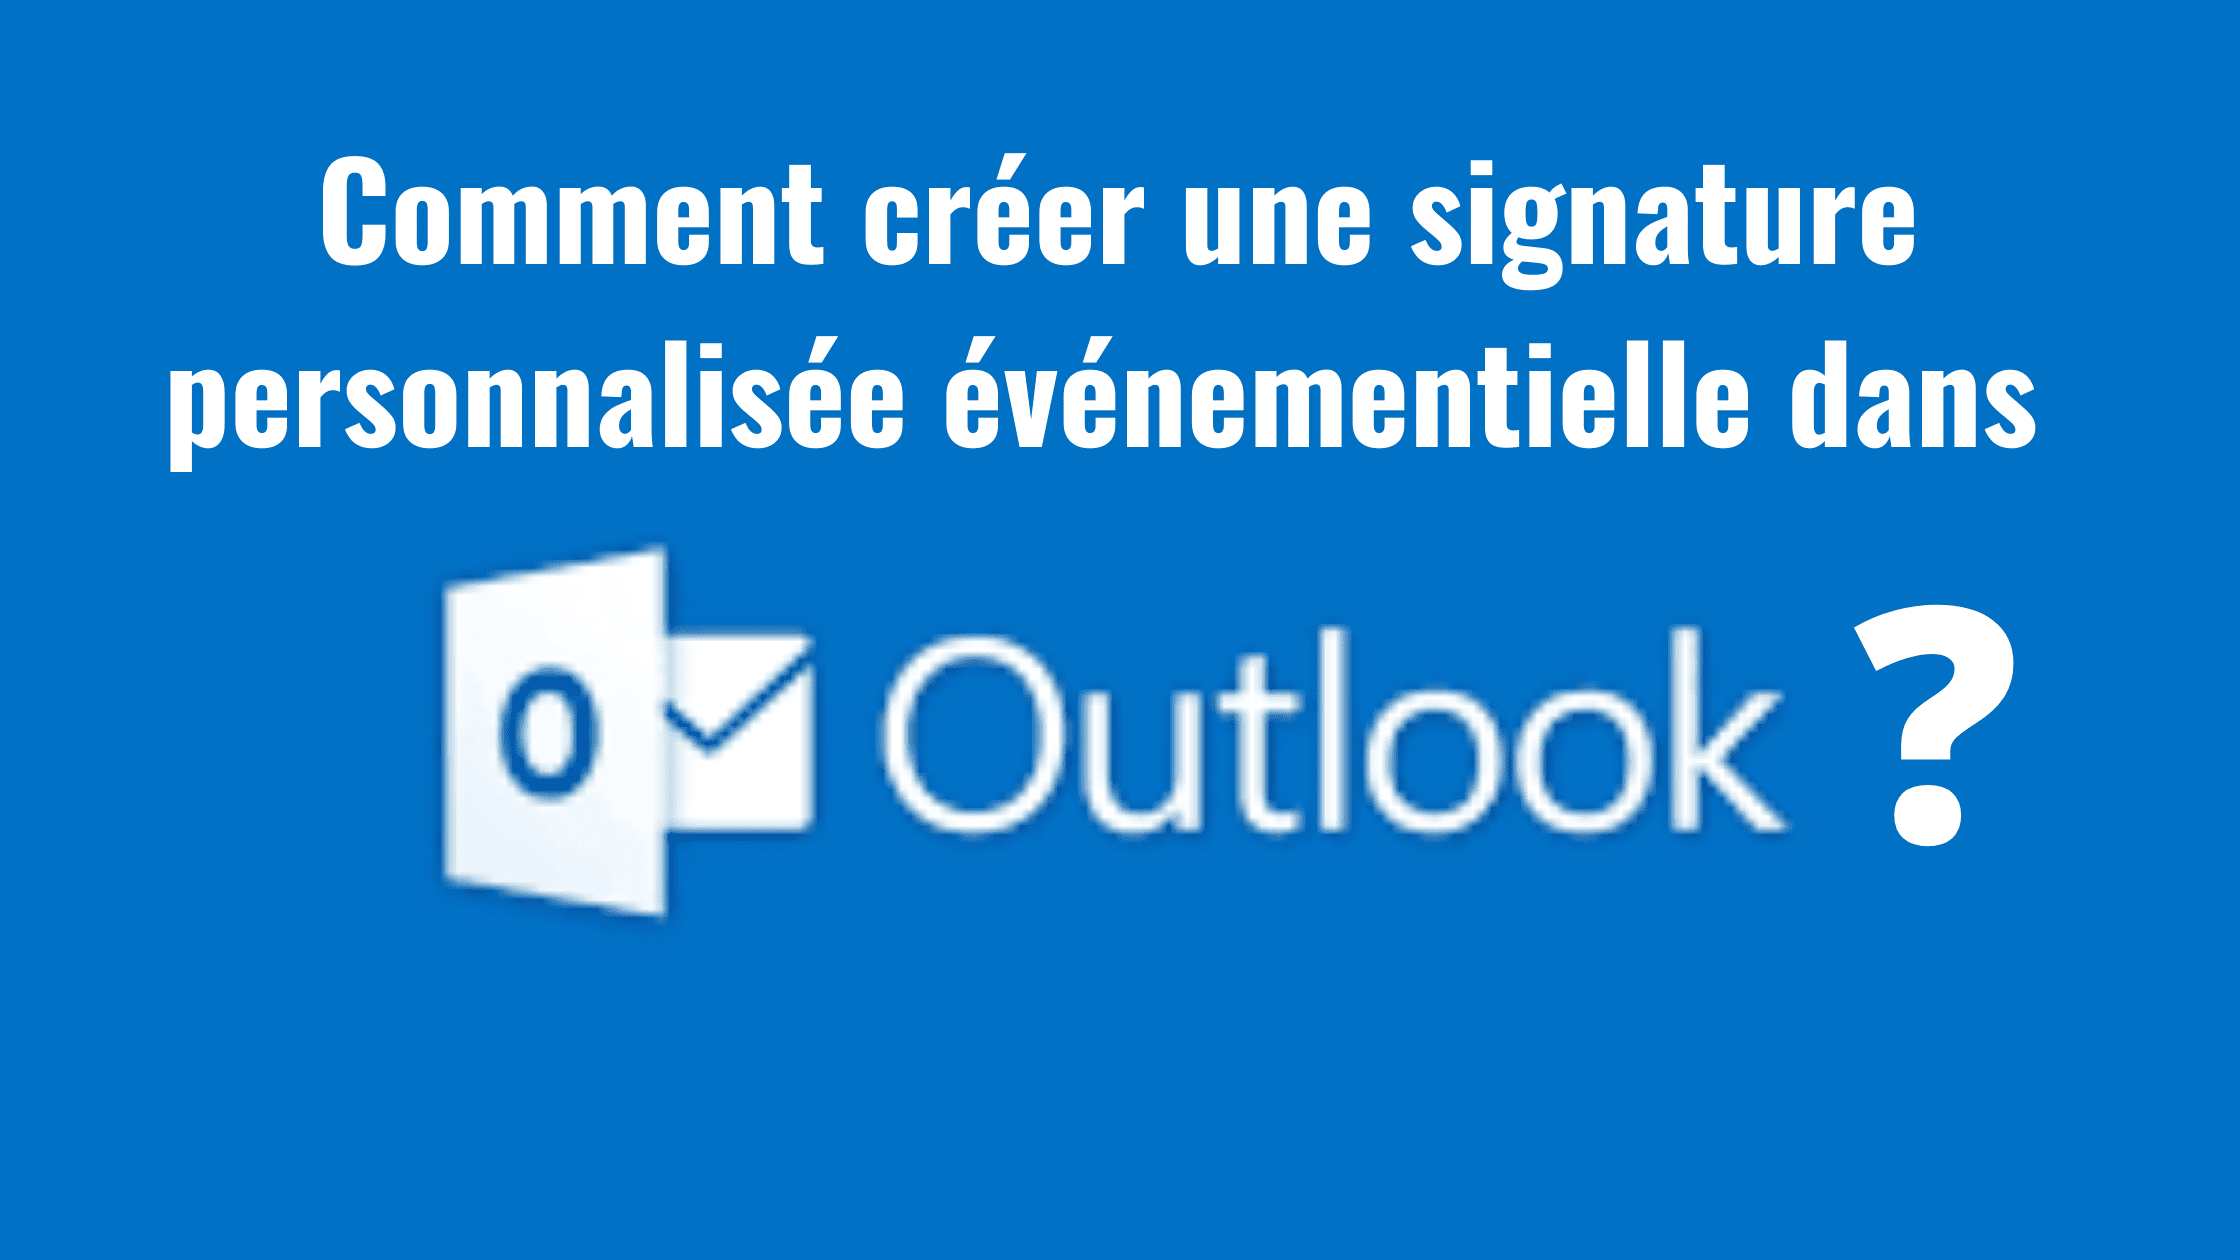 Comment créer une signature personnalisée événementielle dans Outlook ? 86